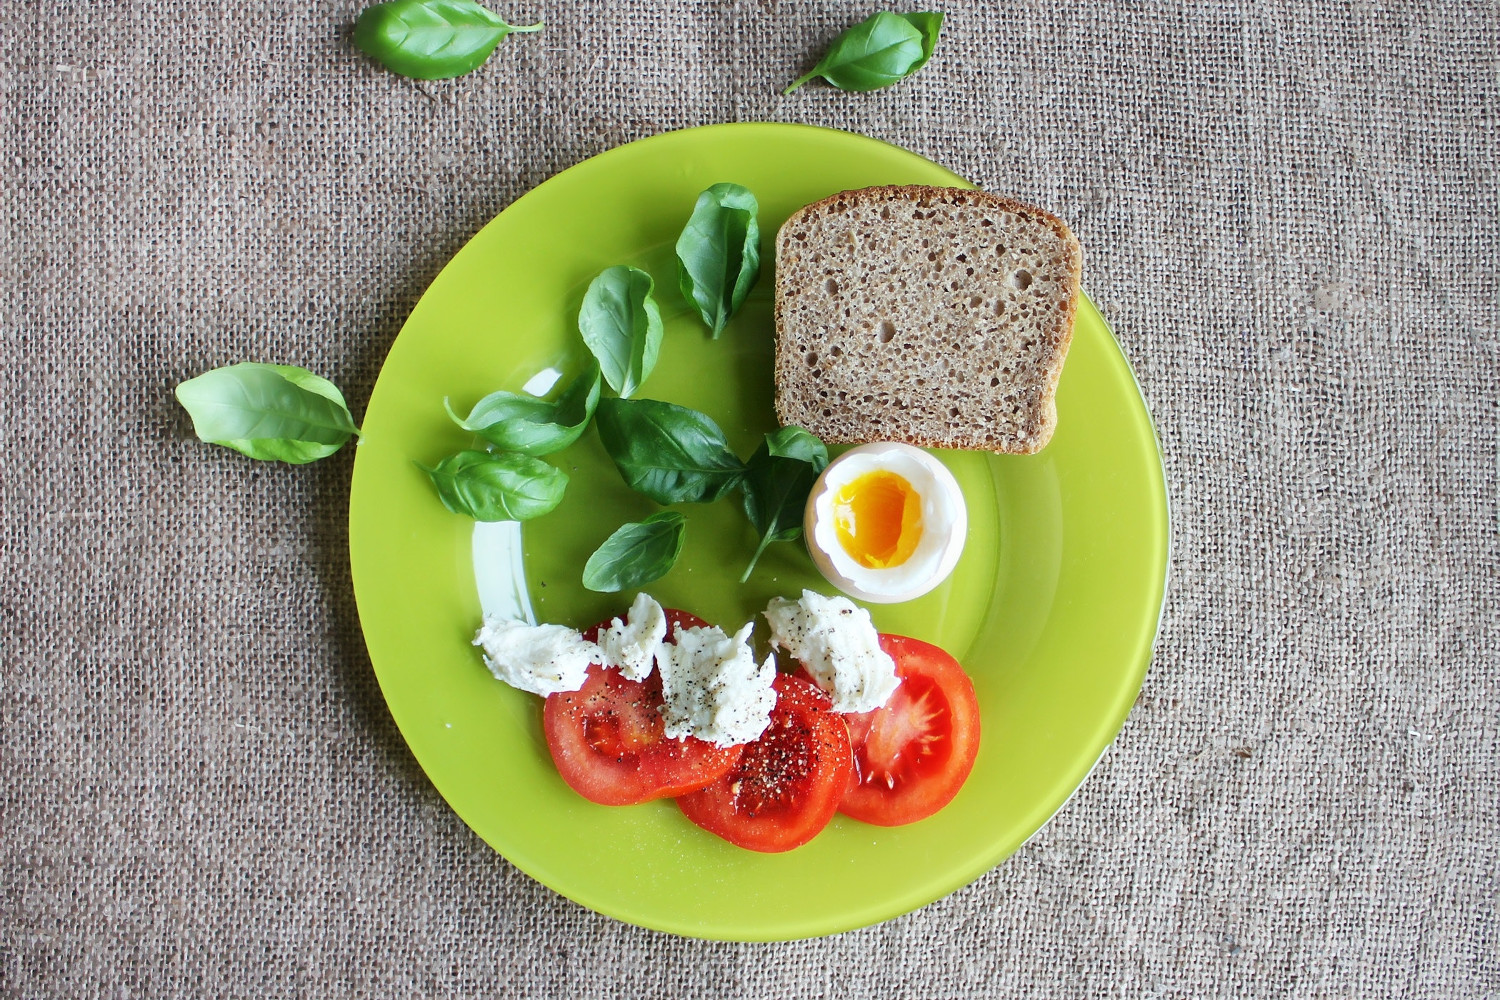 Bread, eggs & tomato